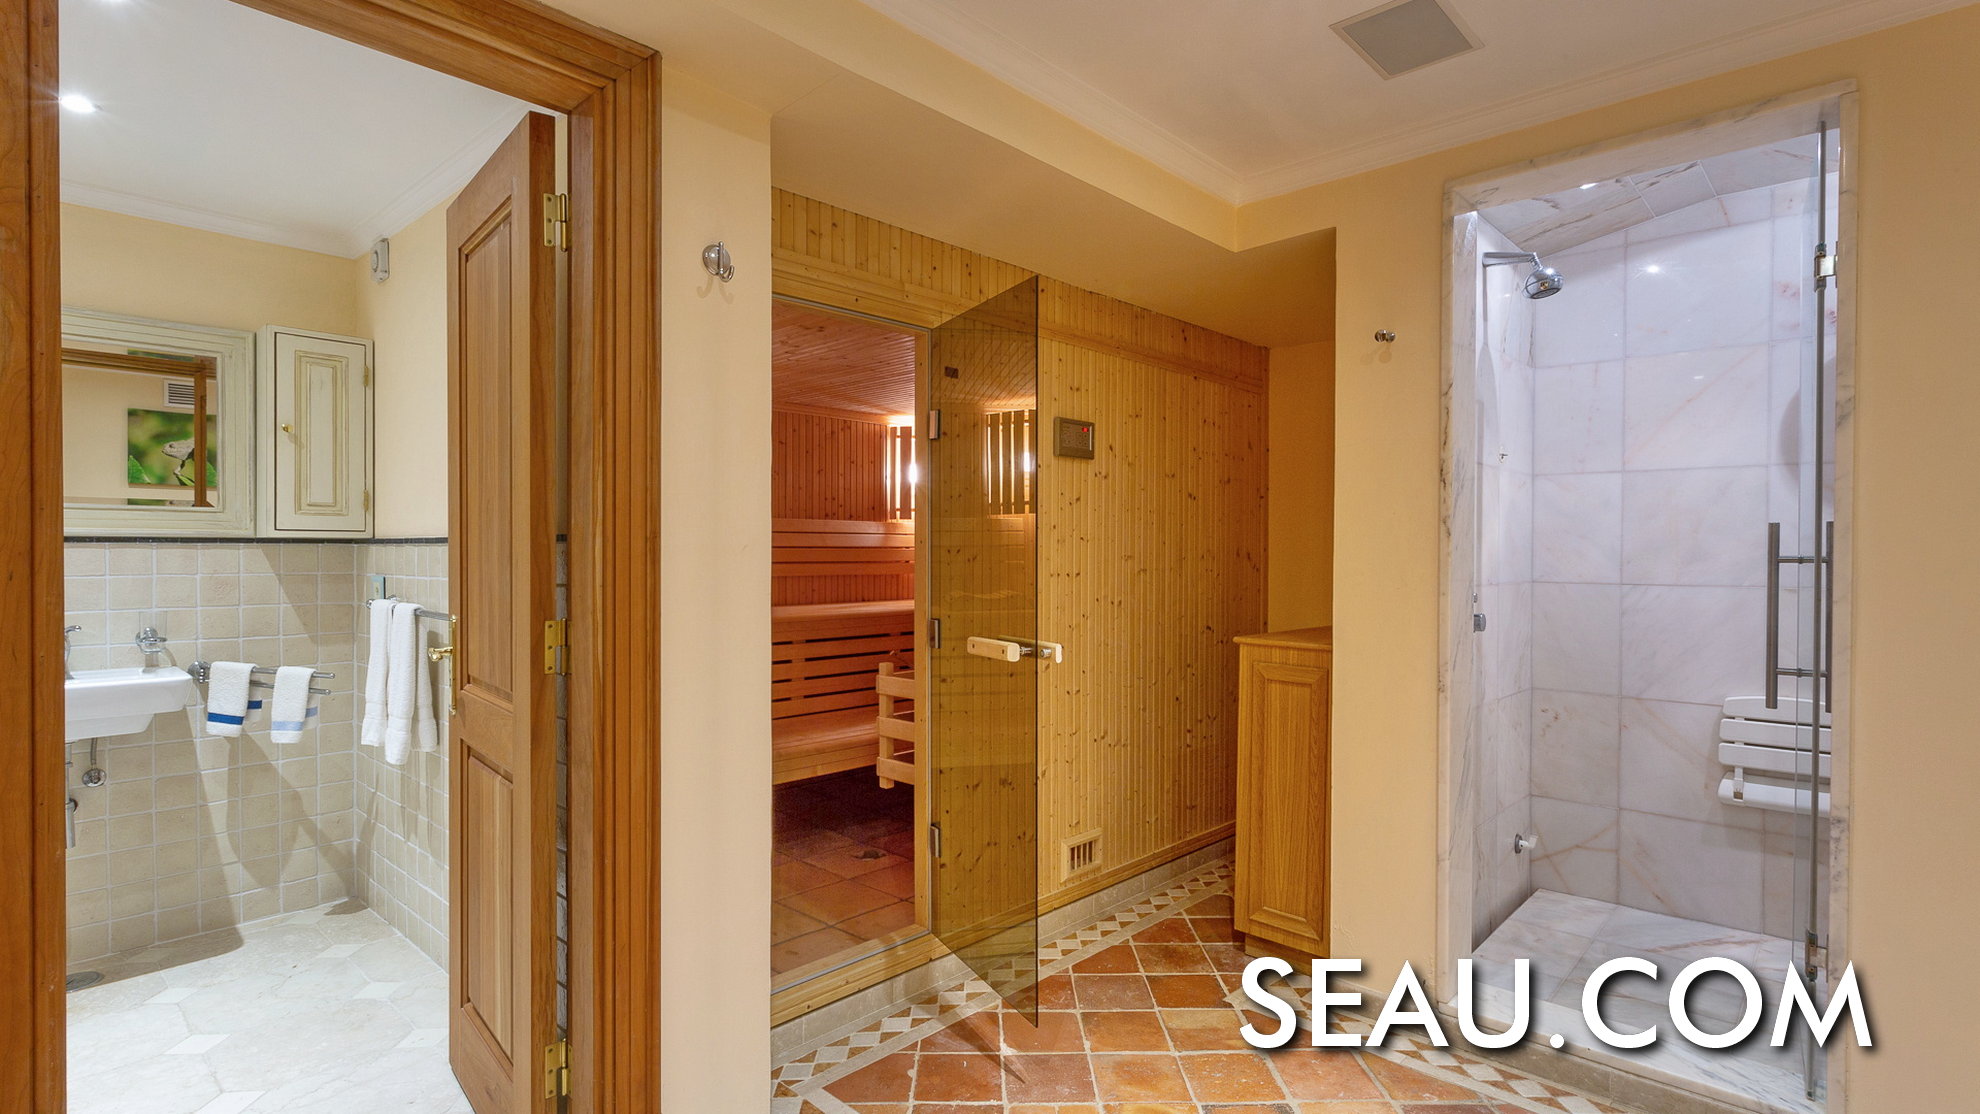 Et une salle de bain et un espace spa, avec une salle de bain turc et une salle de sauna.